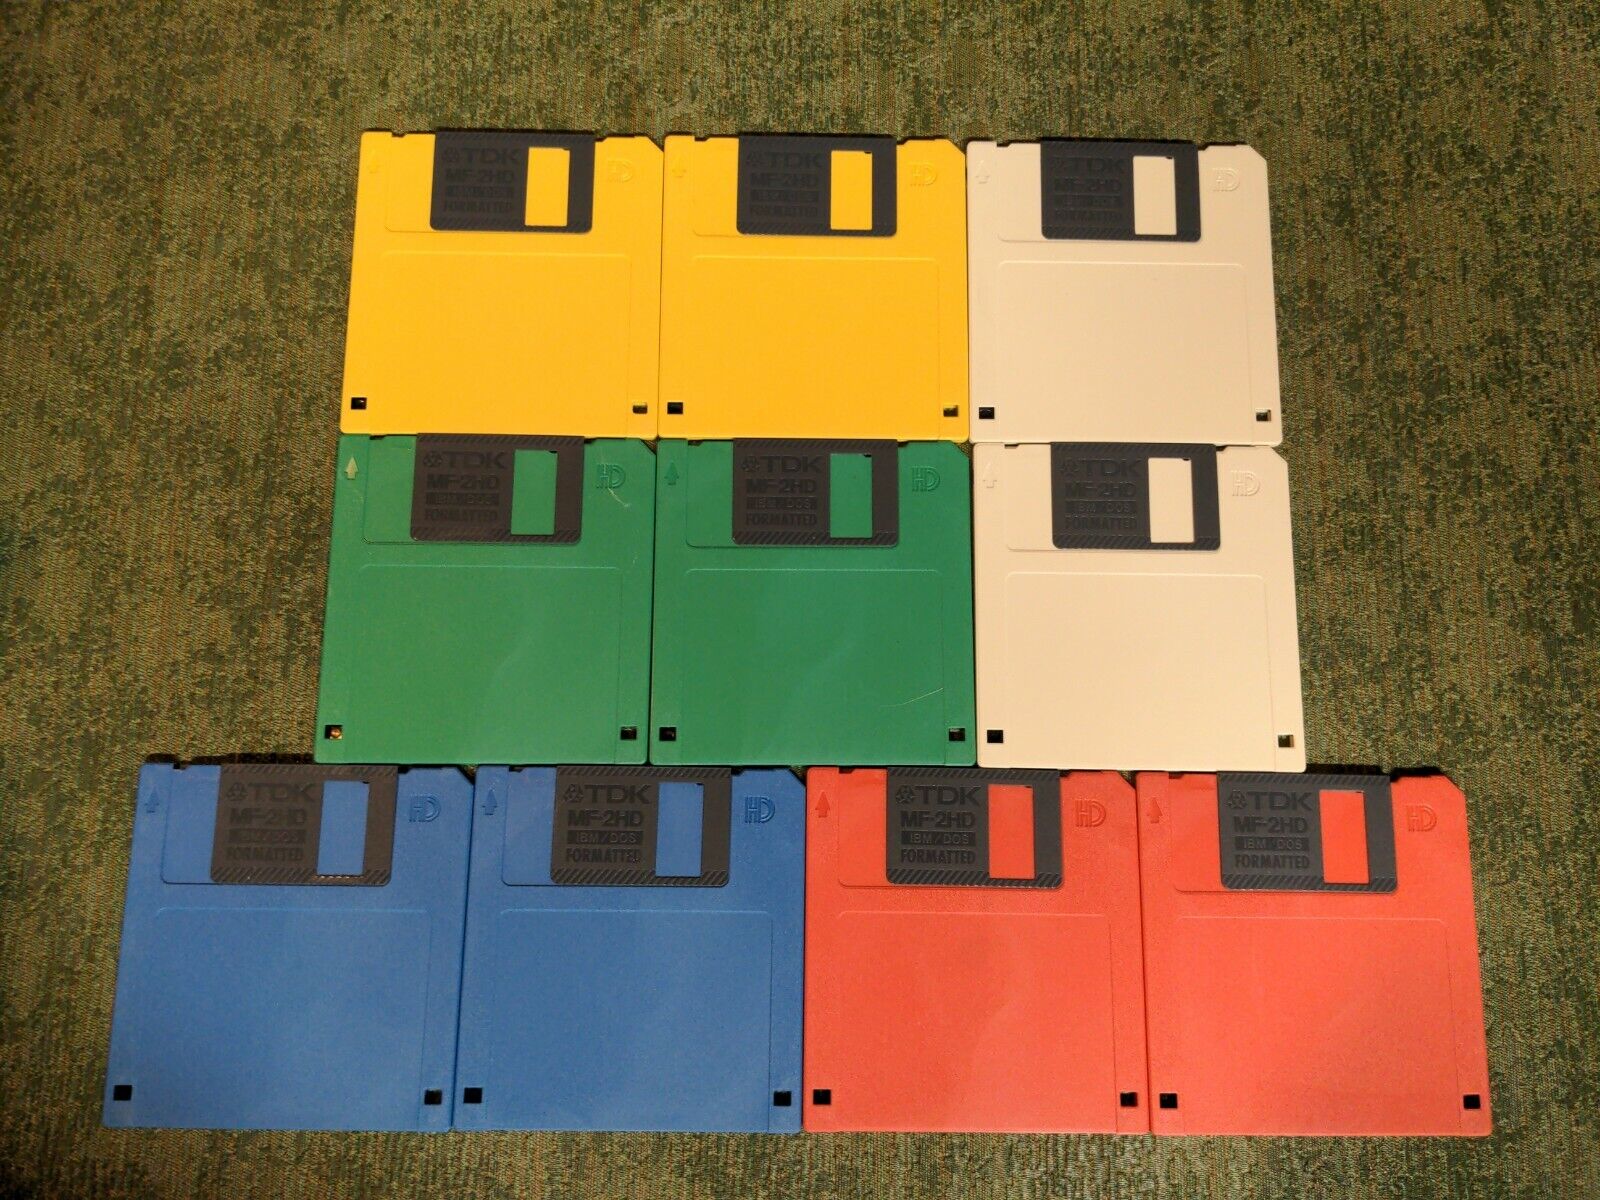 TDK High Density 10 Pack Set IBM DOS Formatted Color Disks MF-2HD